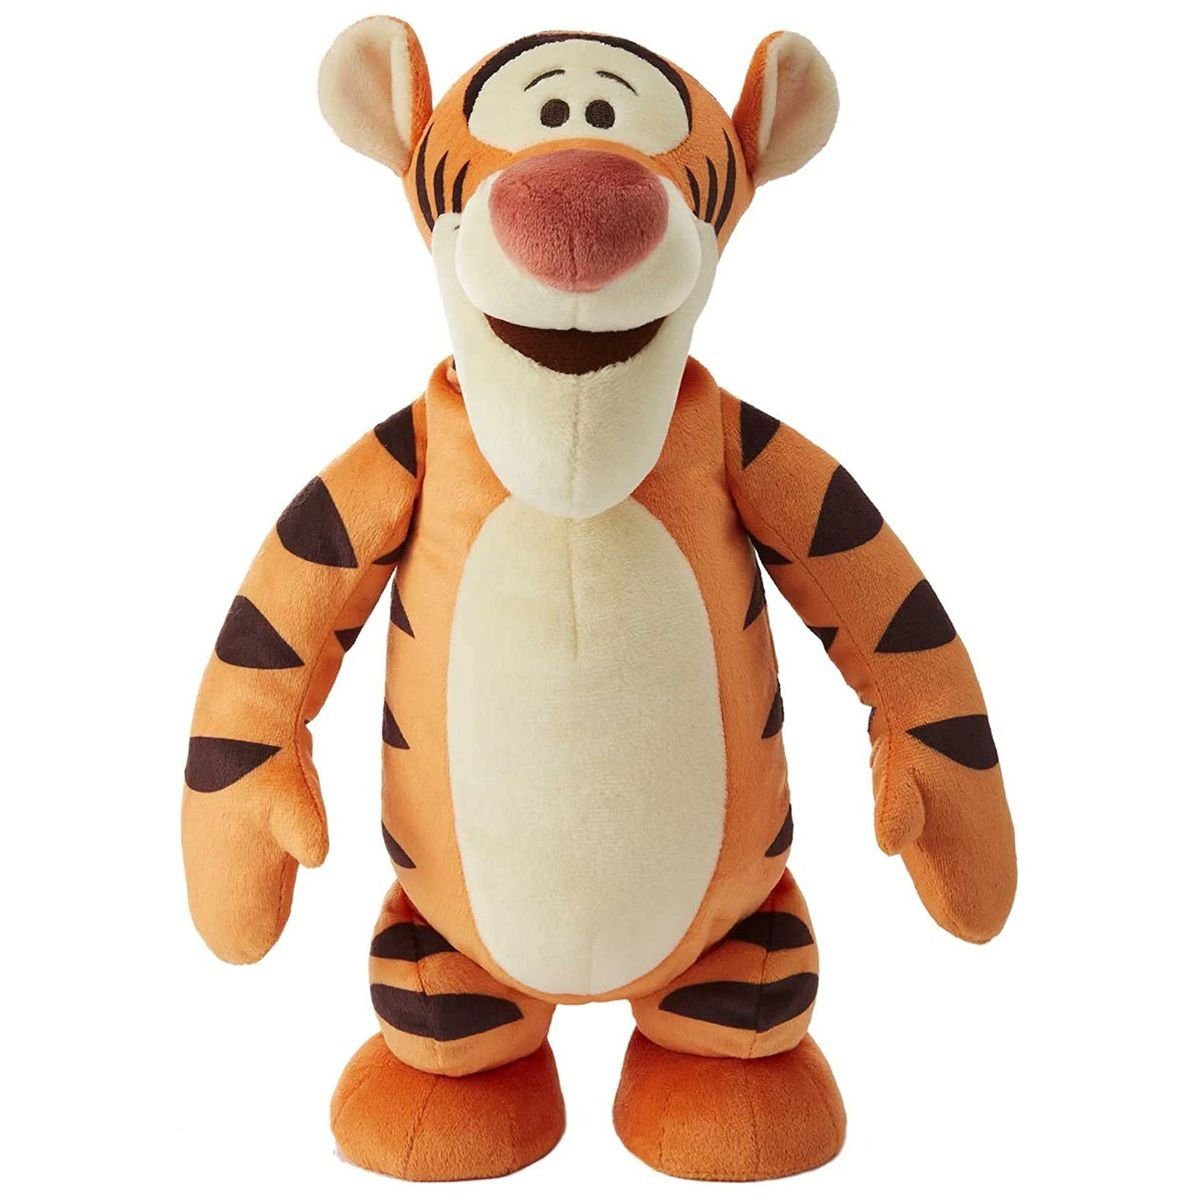 Интерактивная мягкая игрушка Mattel Disney Winnie the Pooh - Tigger, 30 см, оранжевый